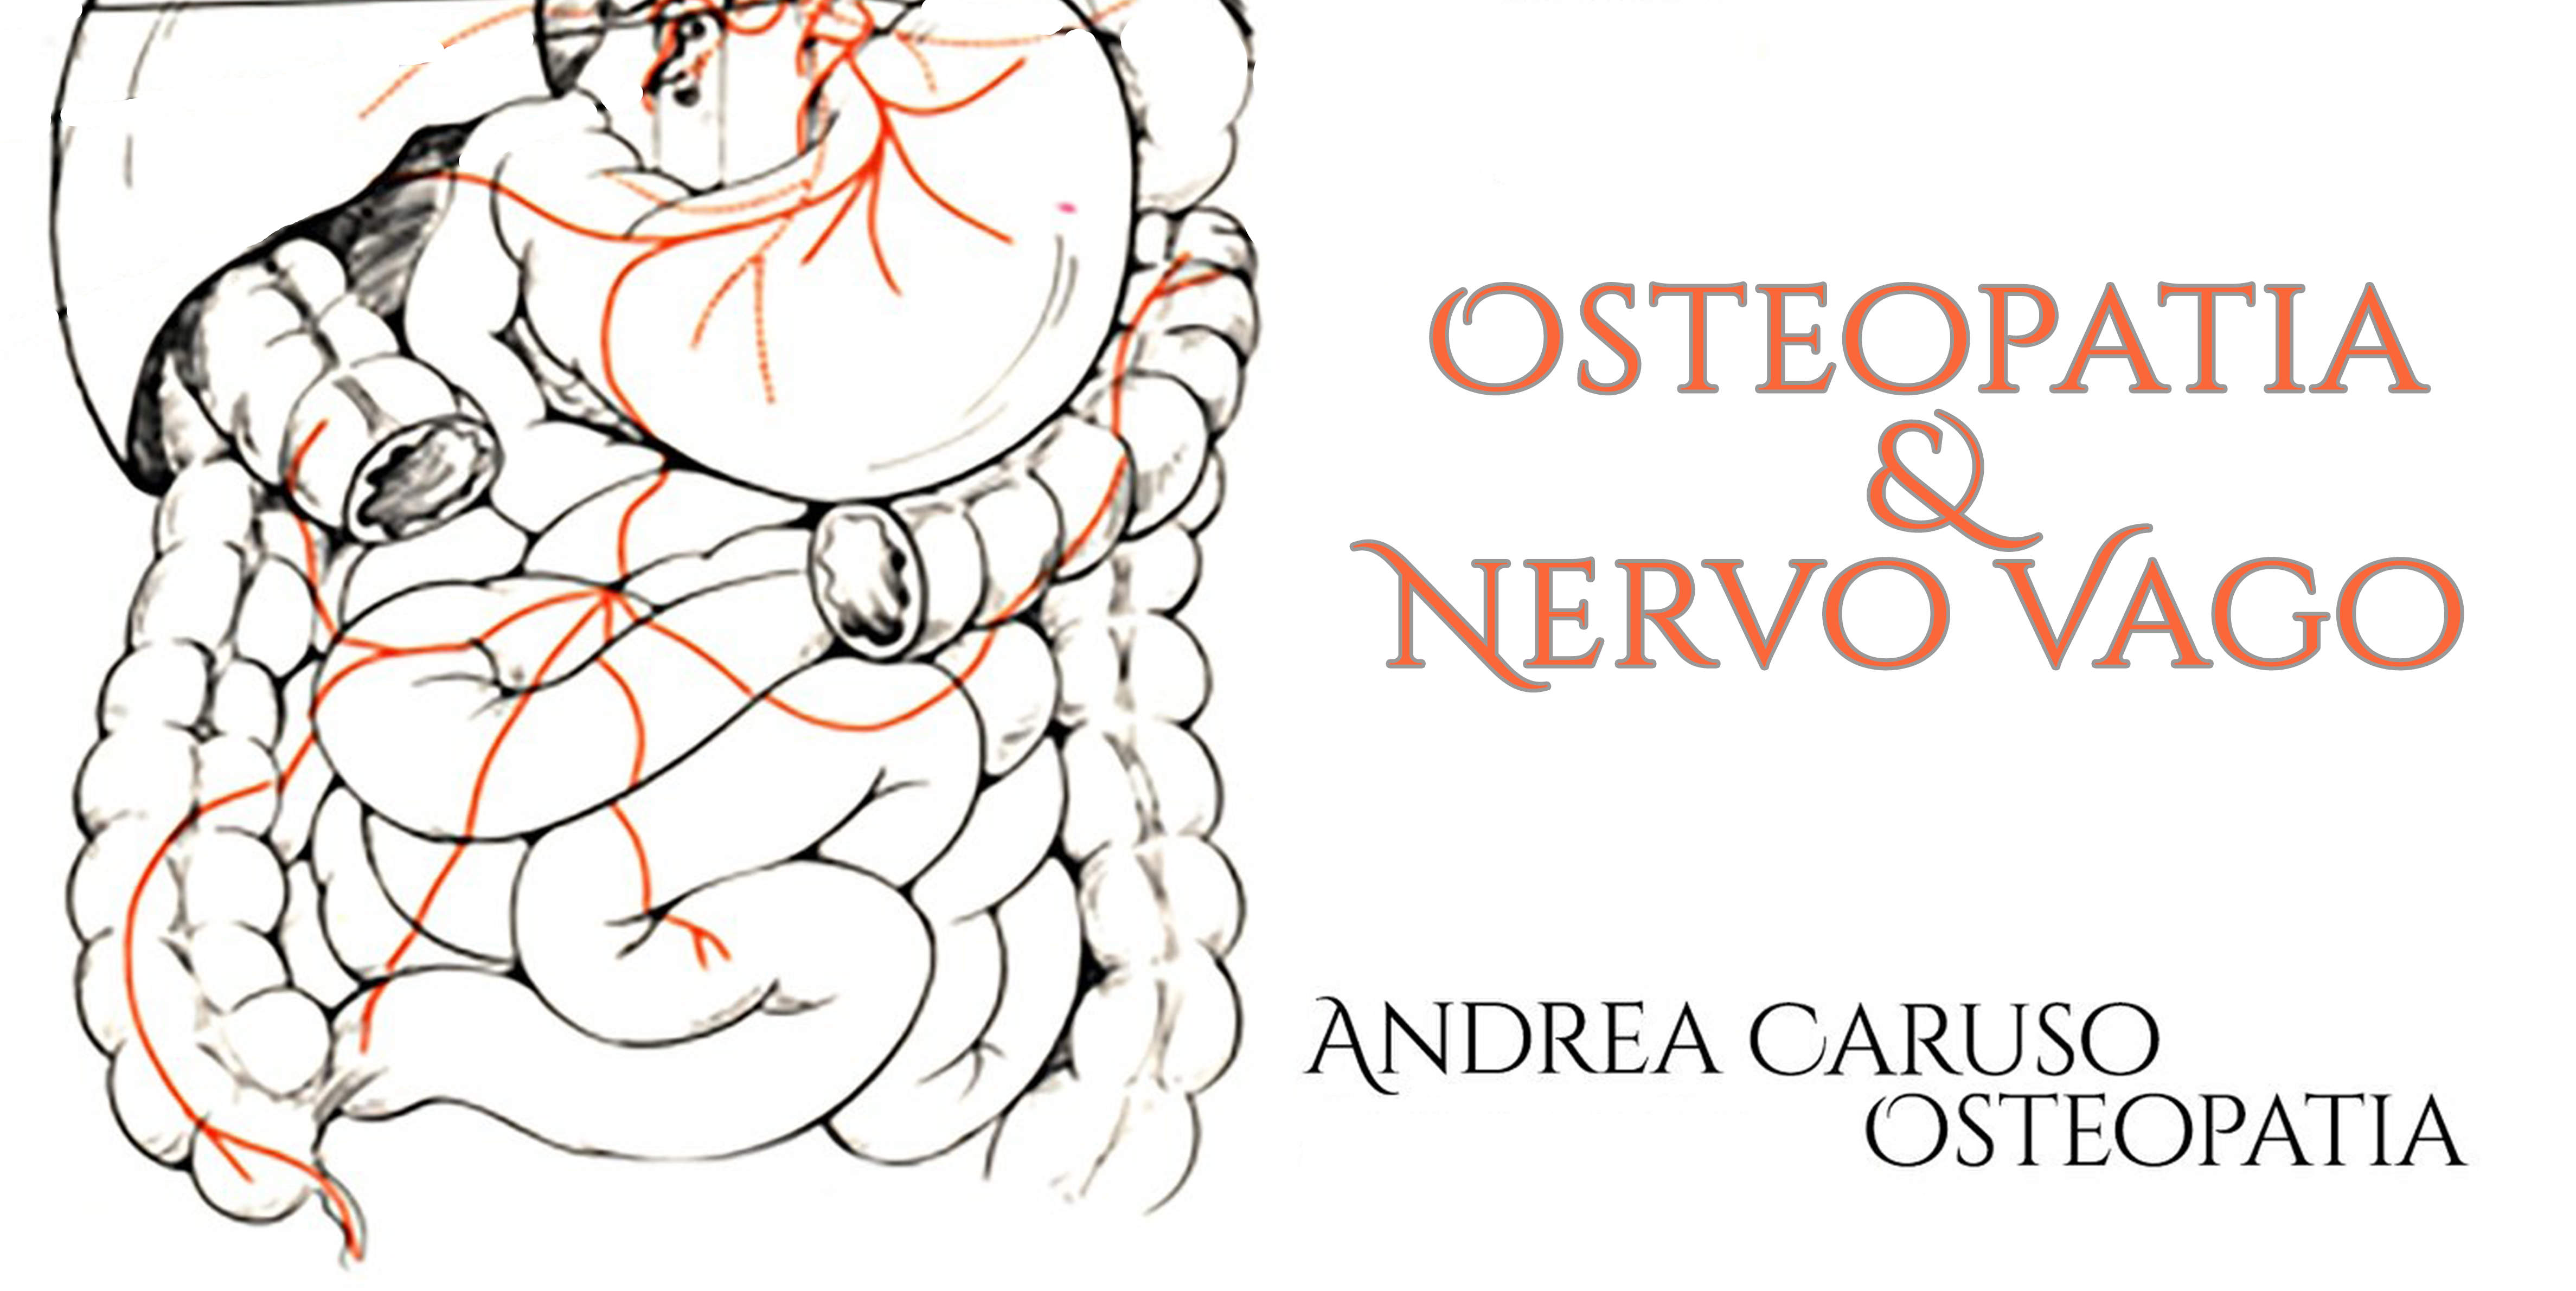 Osteopatia & nervo vago